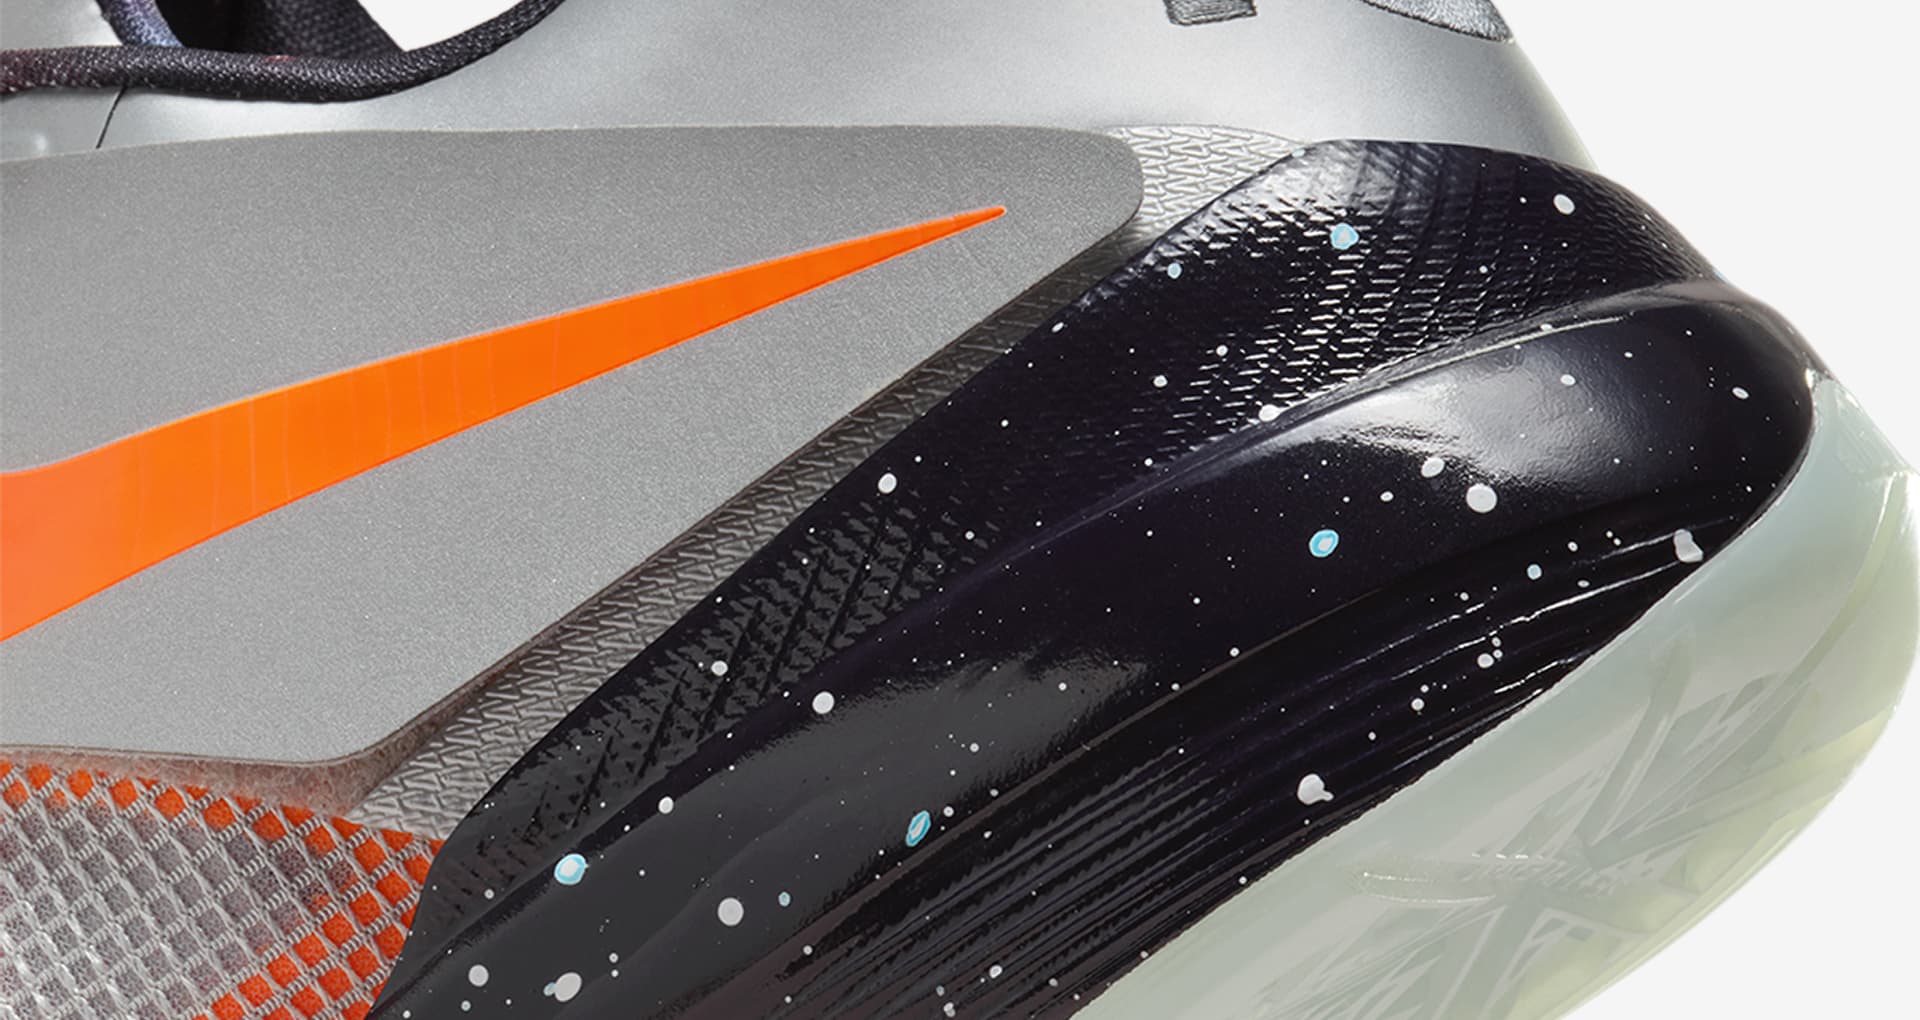 KD 4 'Galaxy' (FD2635-001) release date. Nike SNKRS IE